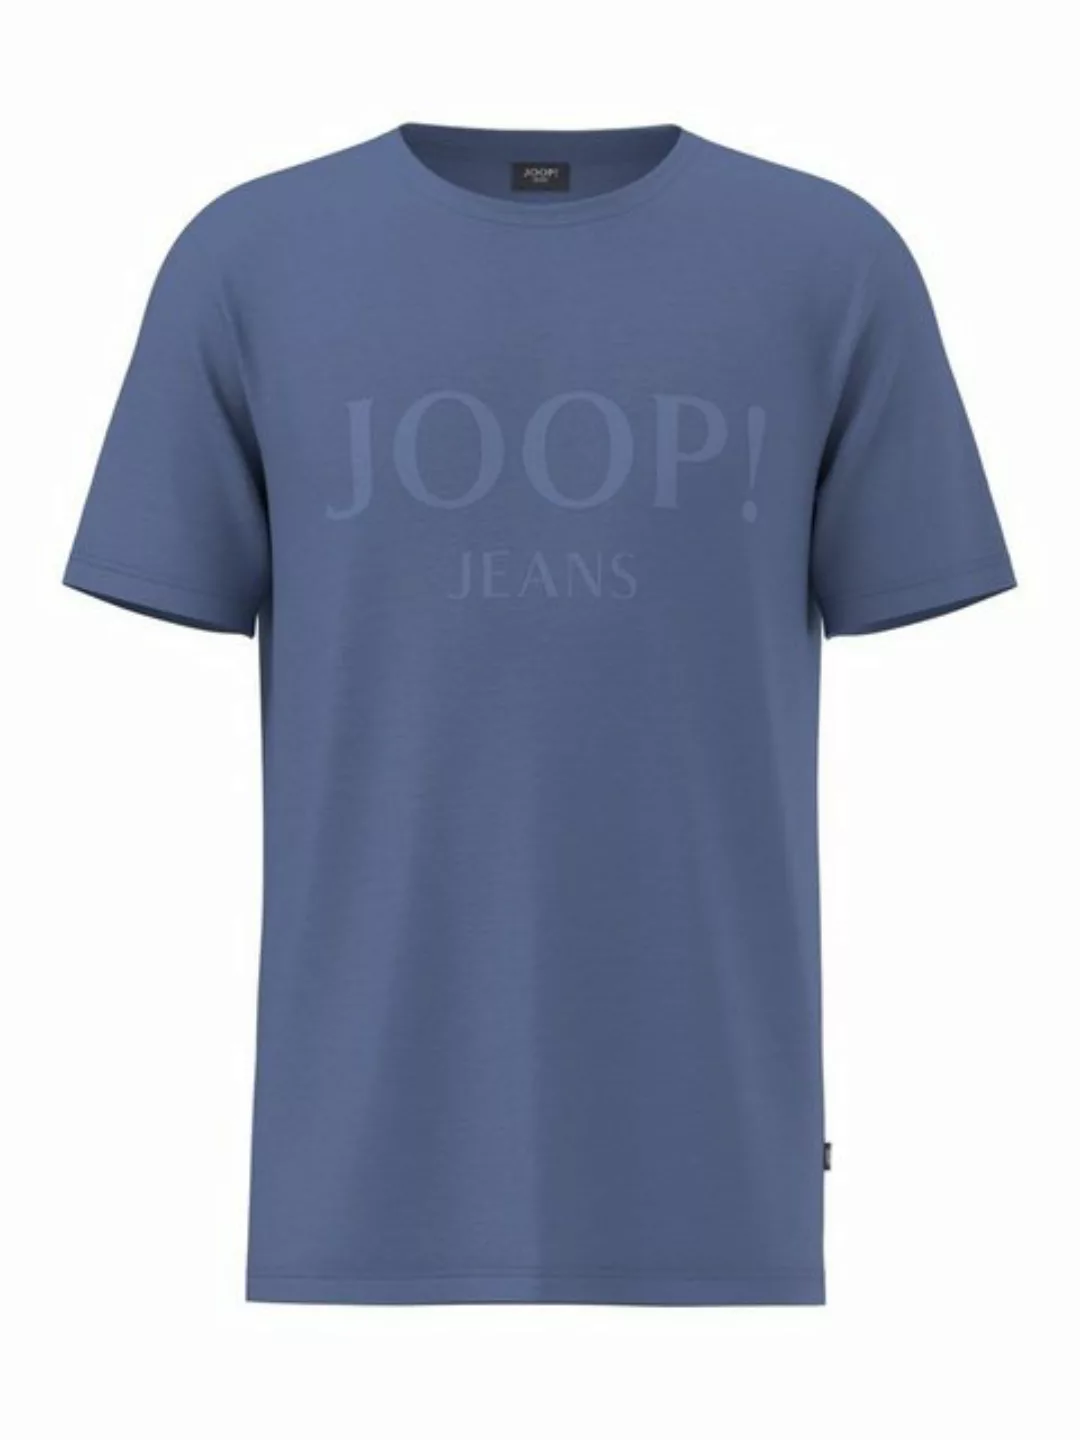 Joop Jeans T-Shirt Alex mit Logodruck günstig online kaufen